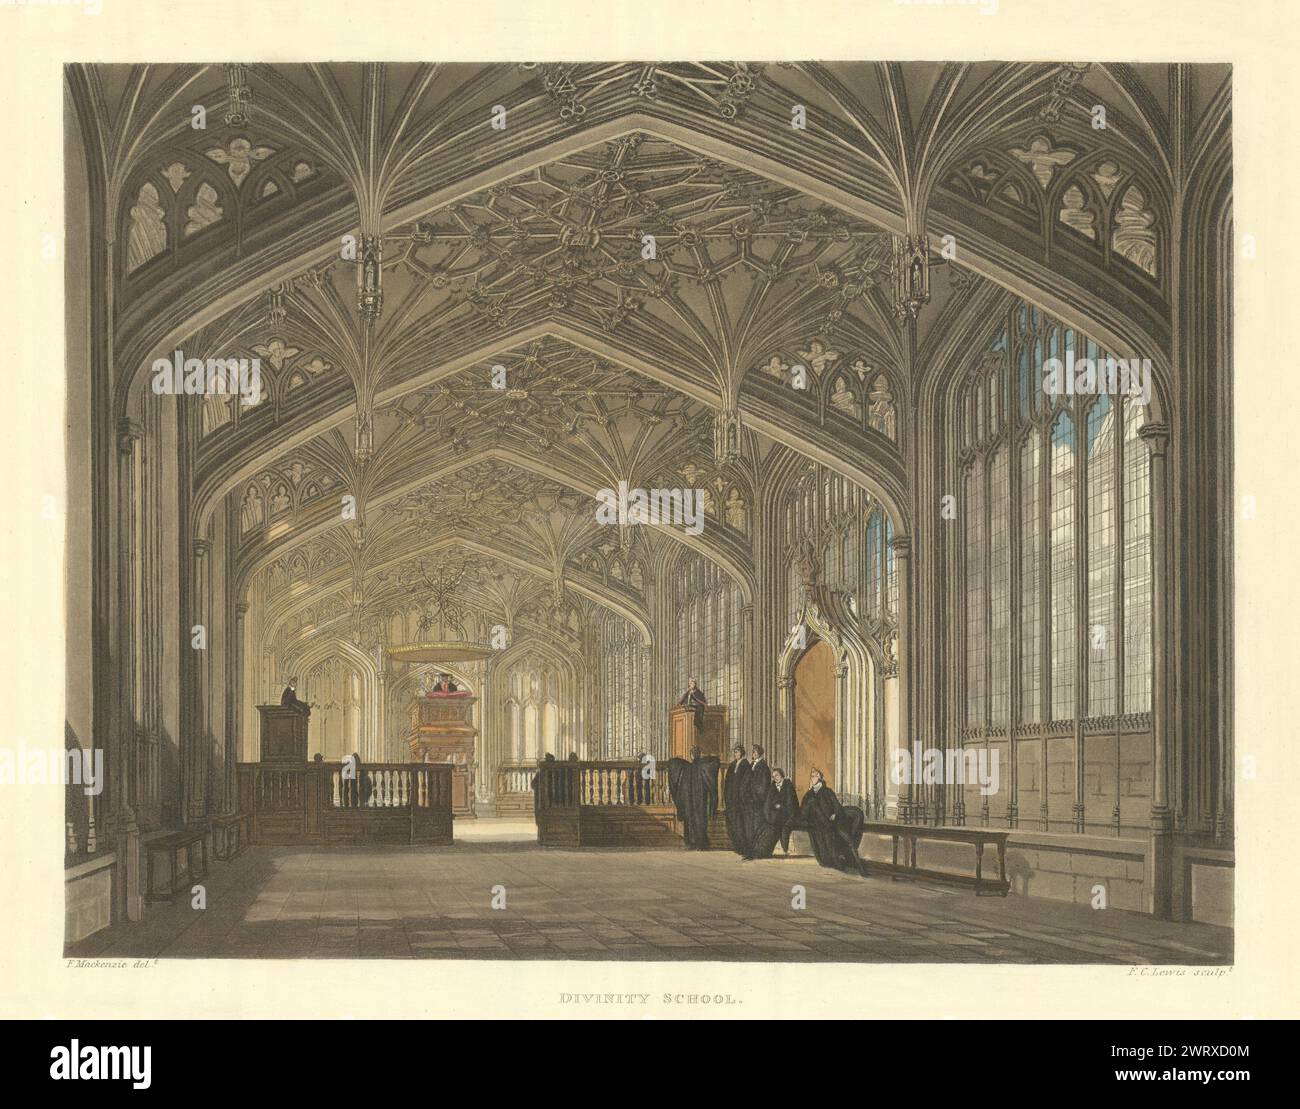 École de la divinité. Ackermann's Oxford University 1814 ancienne photo d'impression antique Banque D'Images